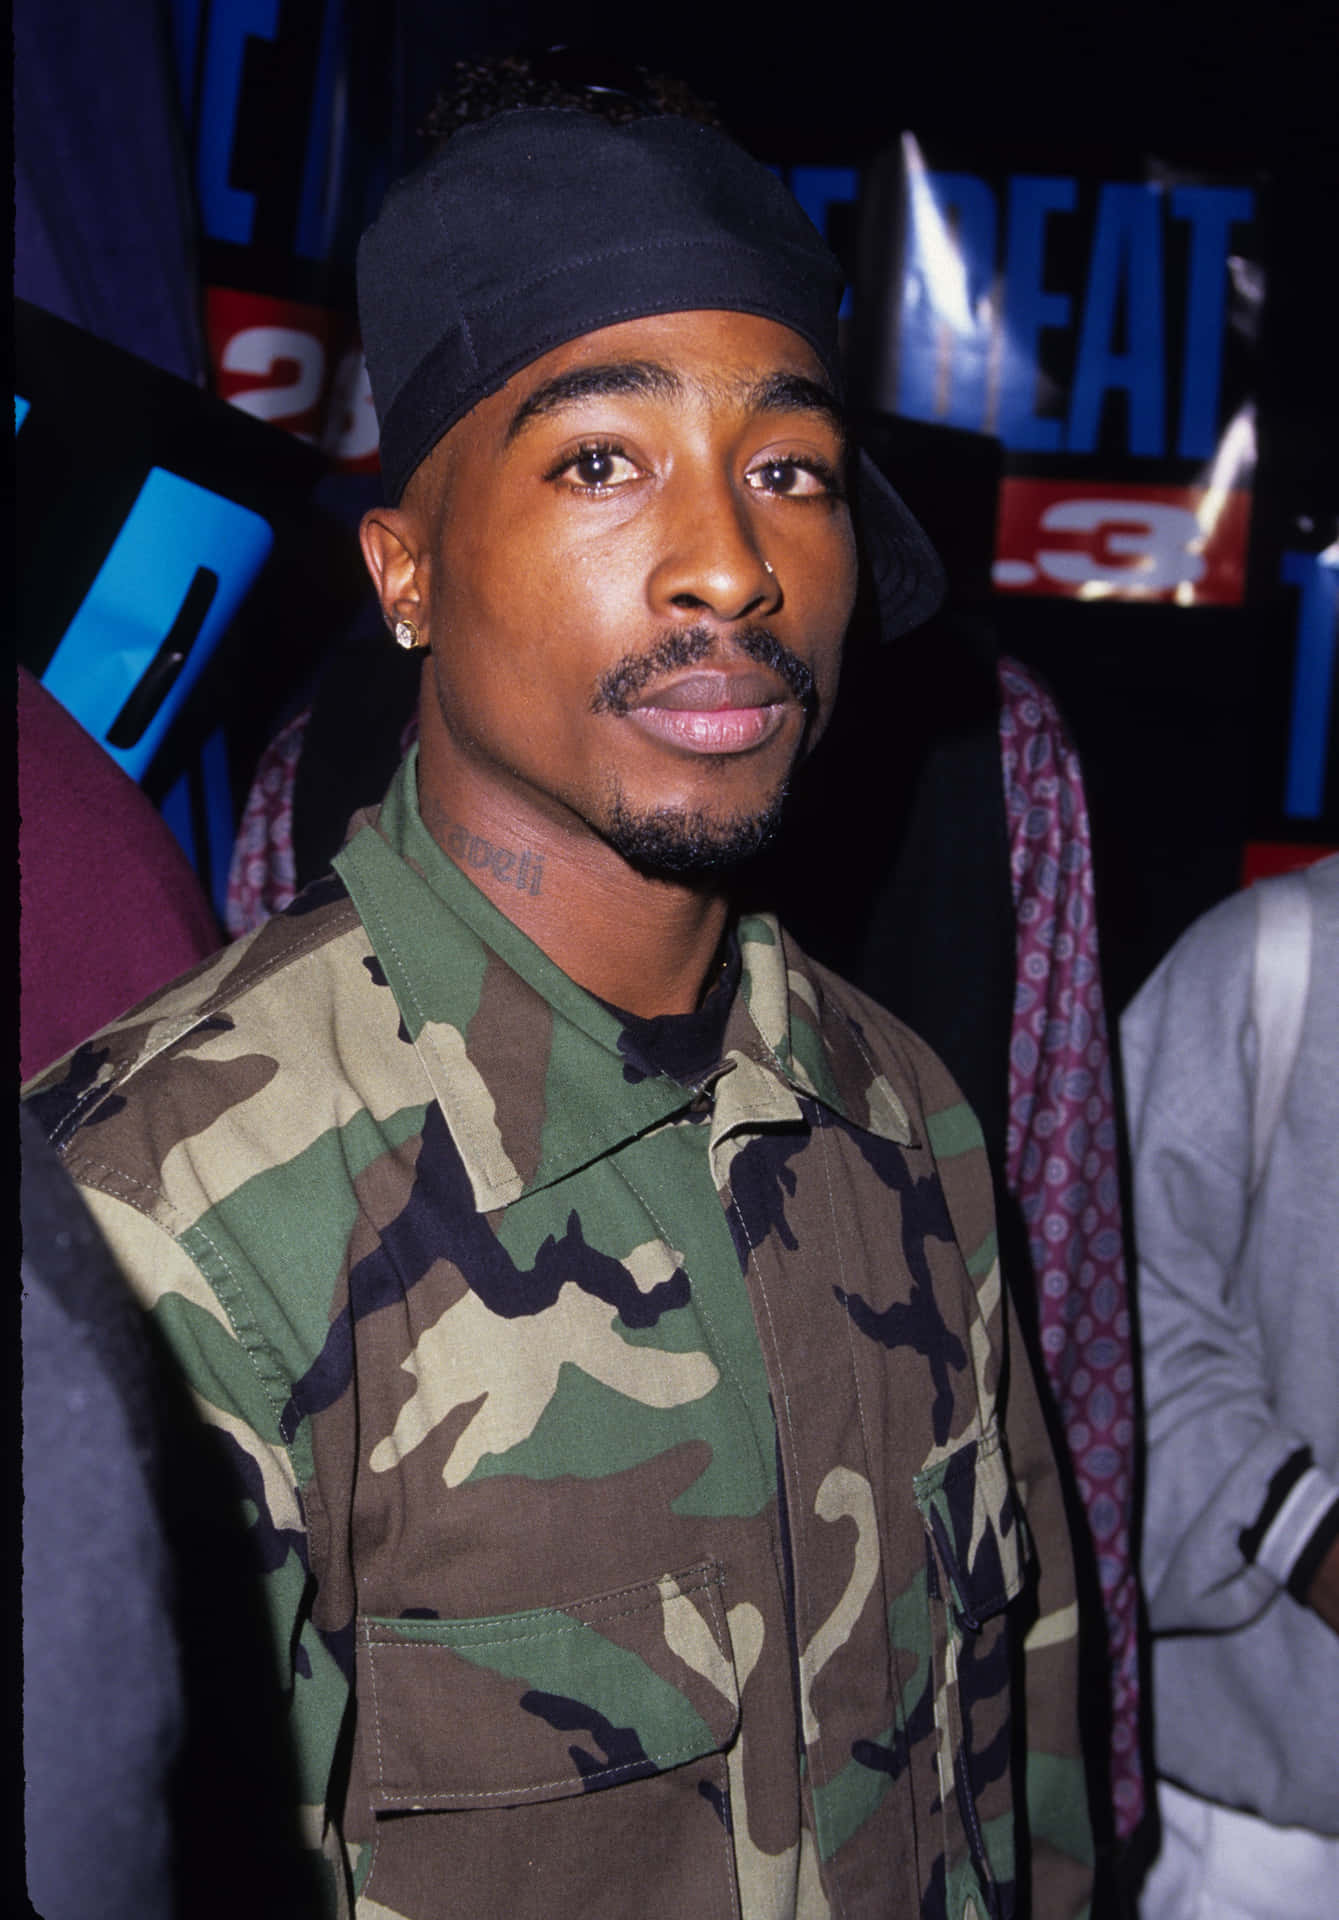 Denlegendariske Rapartisten Tupac